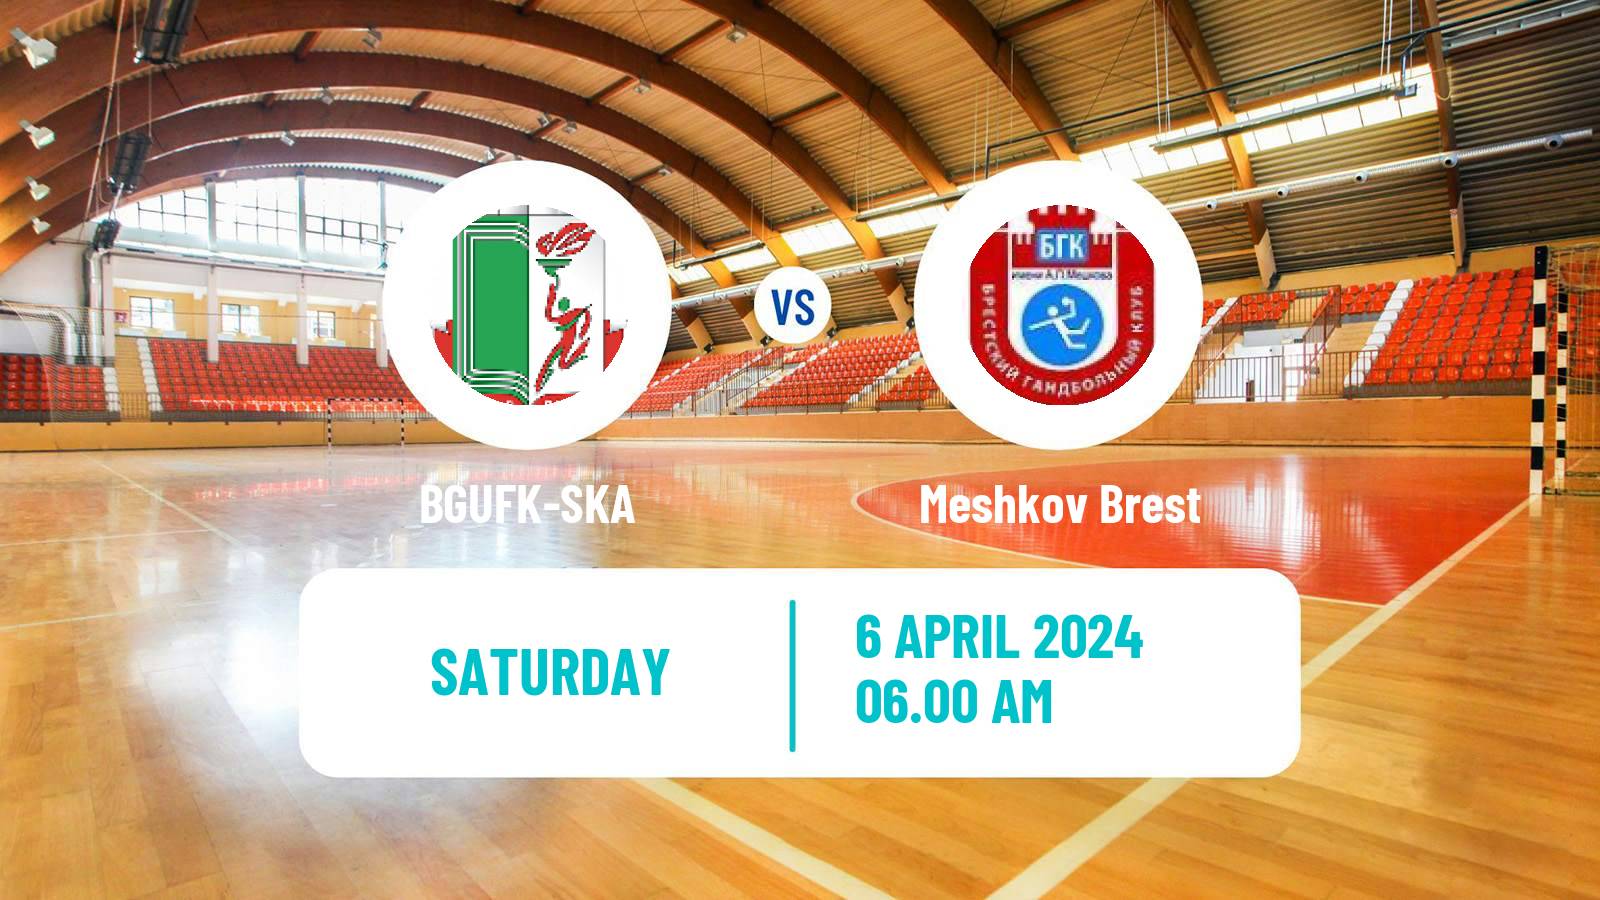 Handball Belarusian Division 1 Handball BGUFK-SKA - Meshkov Brest